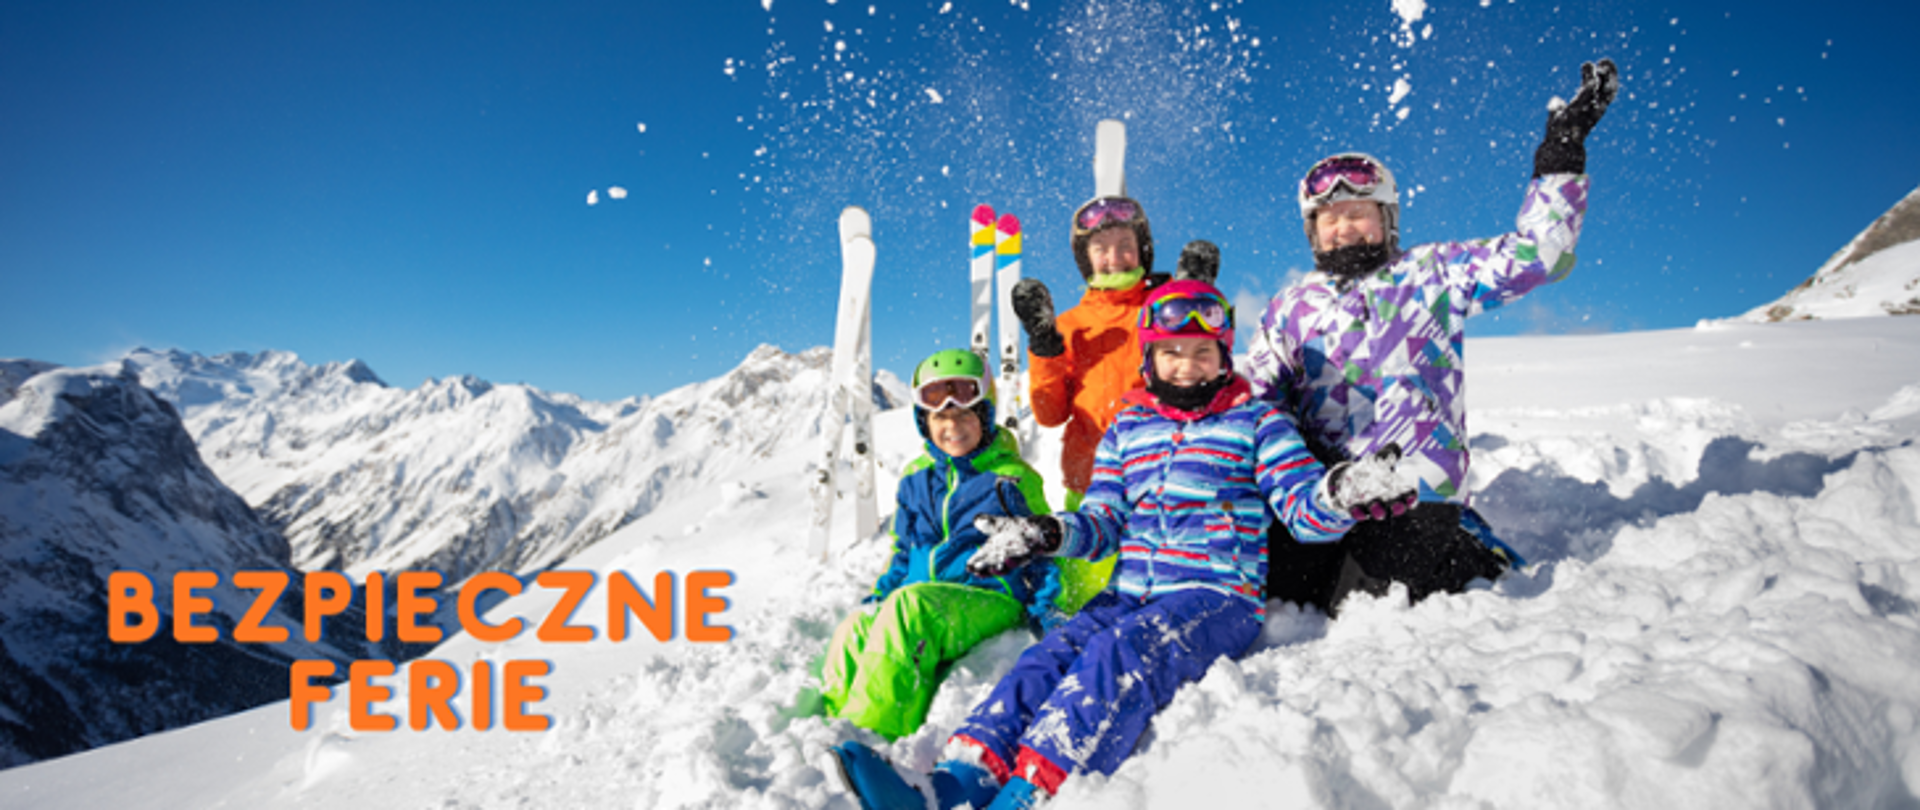 Czworo narciarzy siedzących na śniegu na tle gór